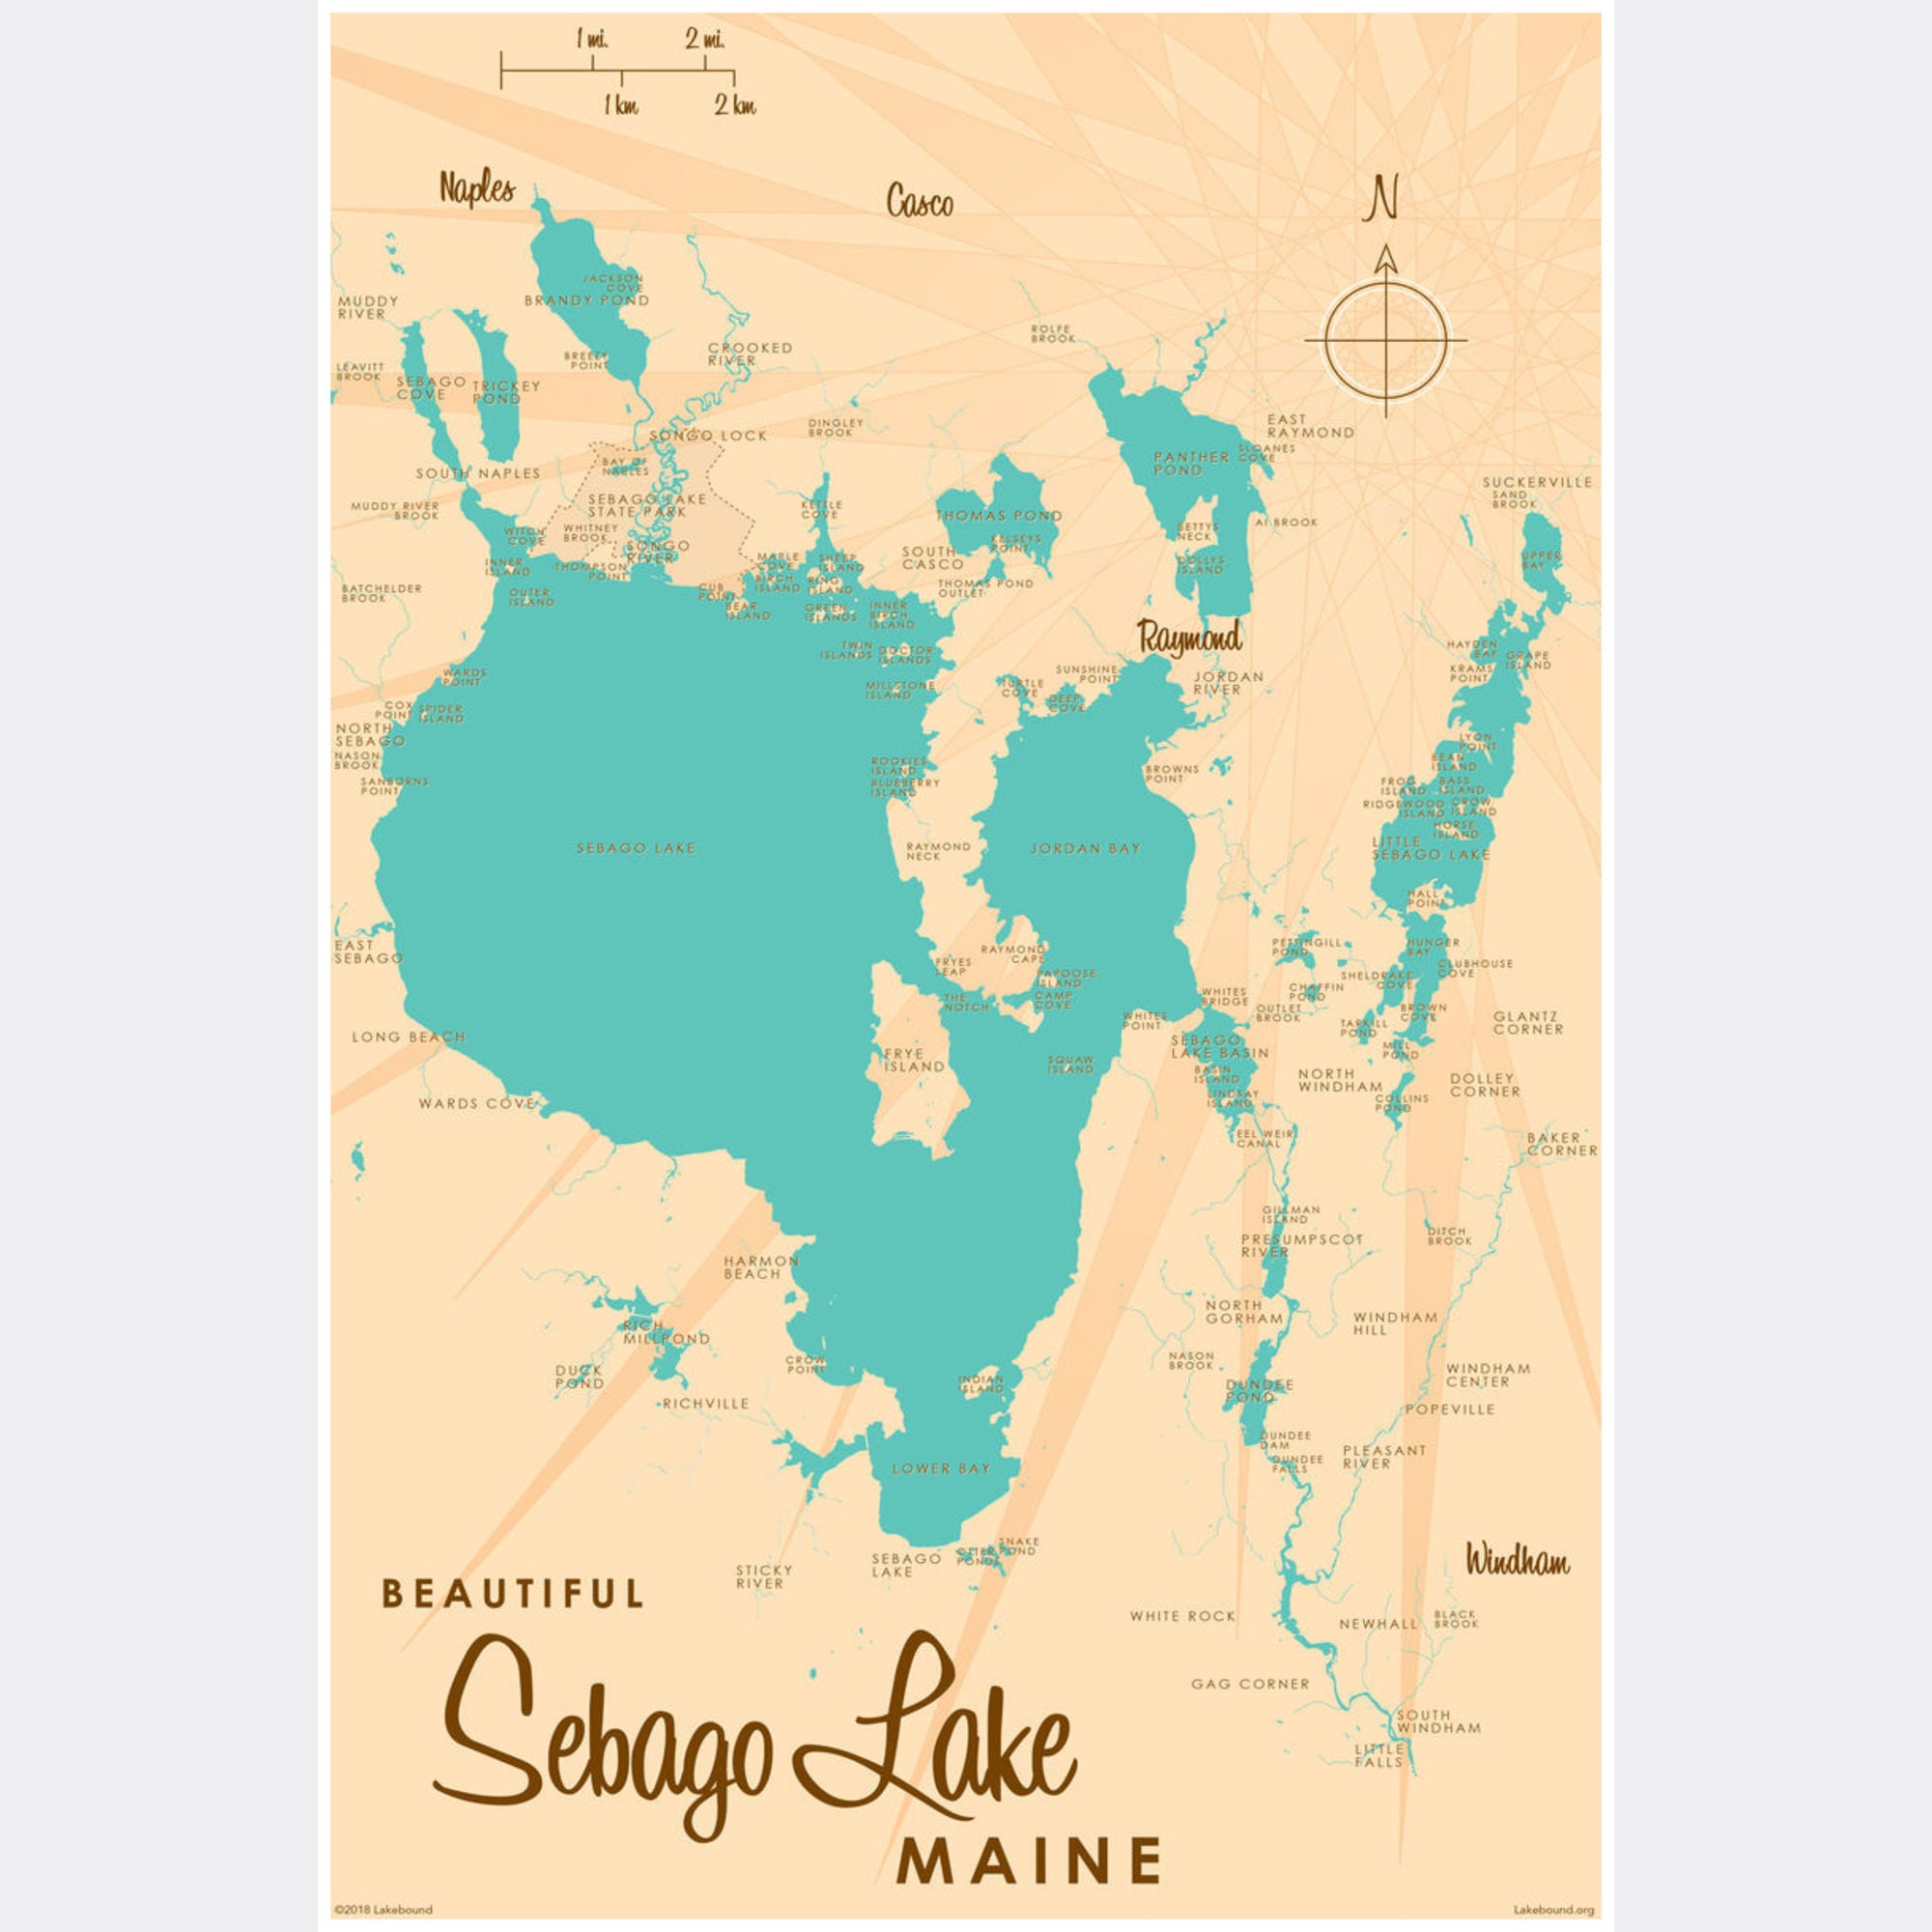 Sebago Lake Maine, Paper Print